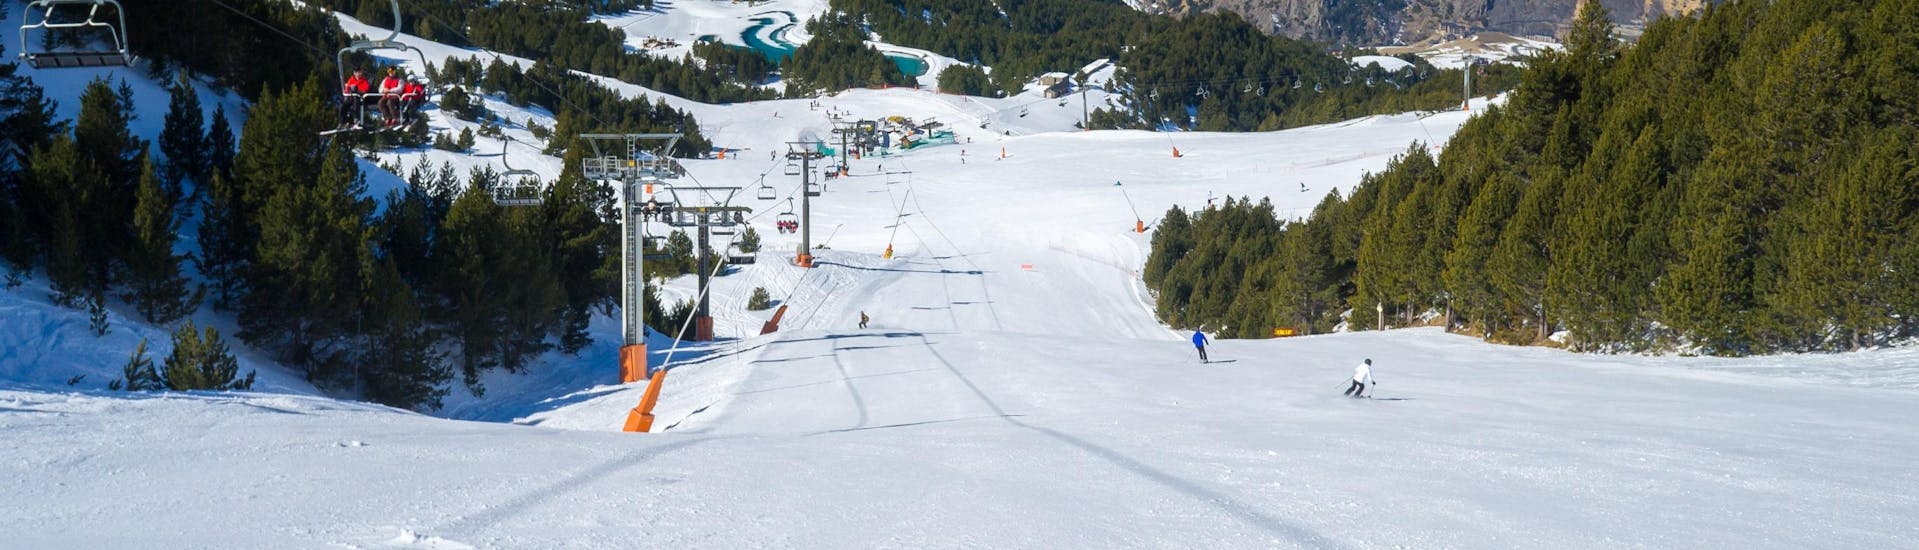 Skiërs op de pistes van Andorra naast de skilift.